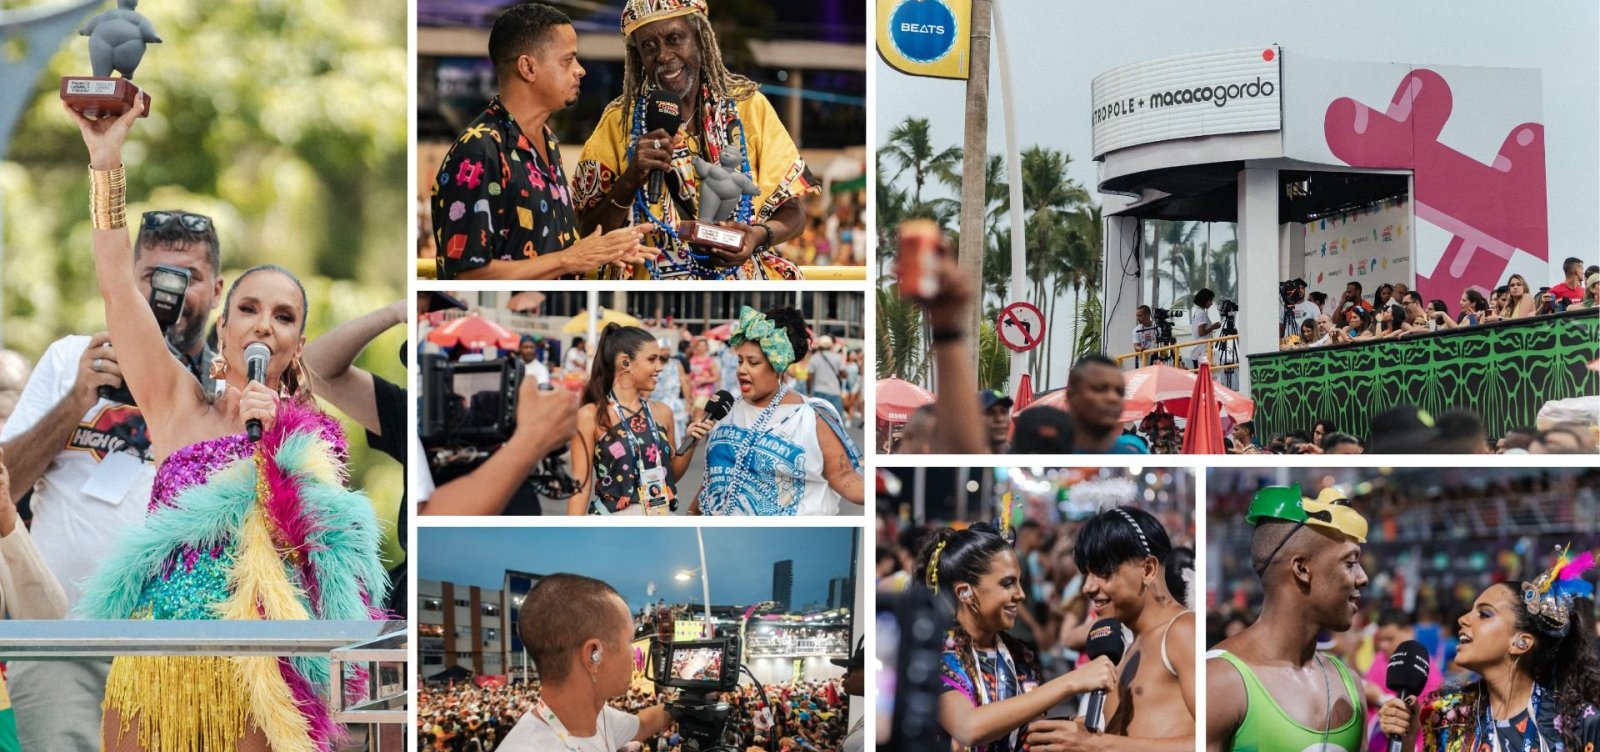 Salvador Carnaval do Brasil: com 100h de transmissão, Metropole e Macaco Gordo chegam a 6 mi de pessoas